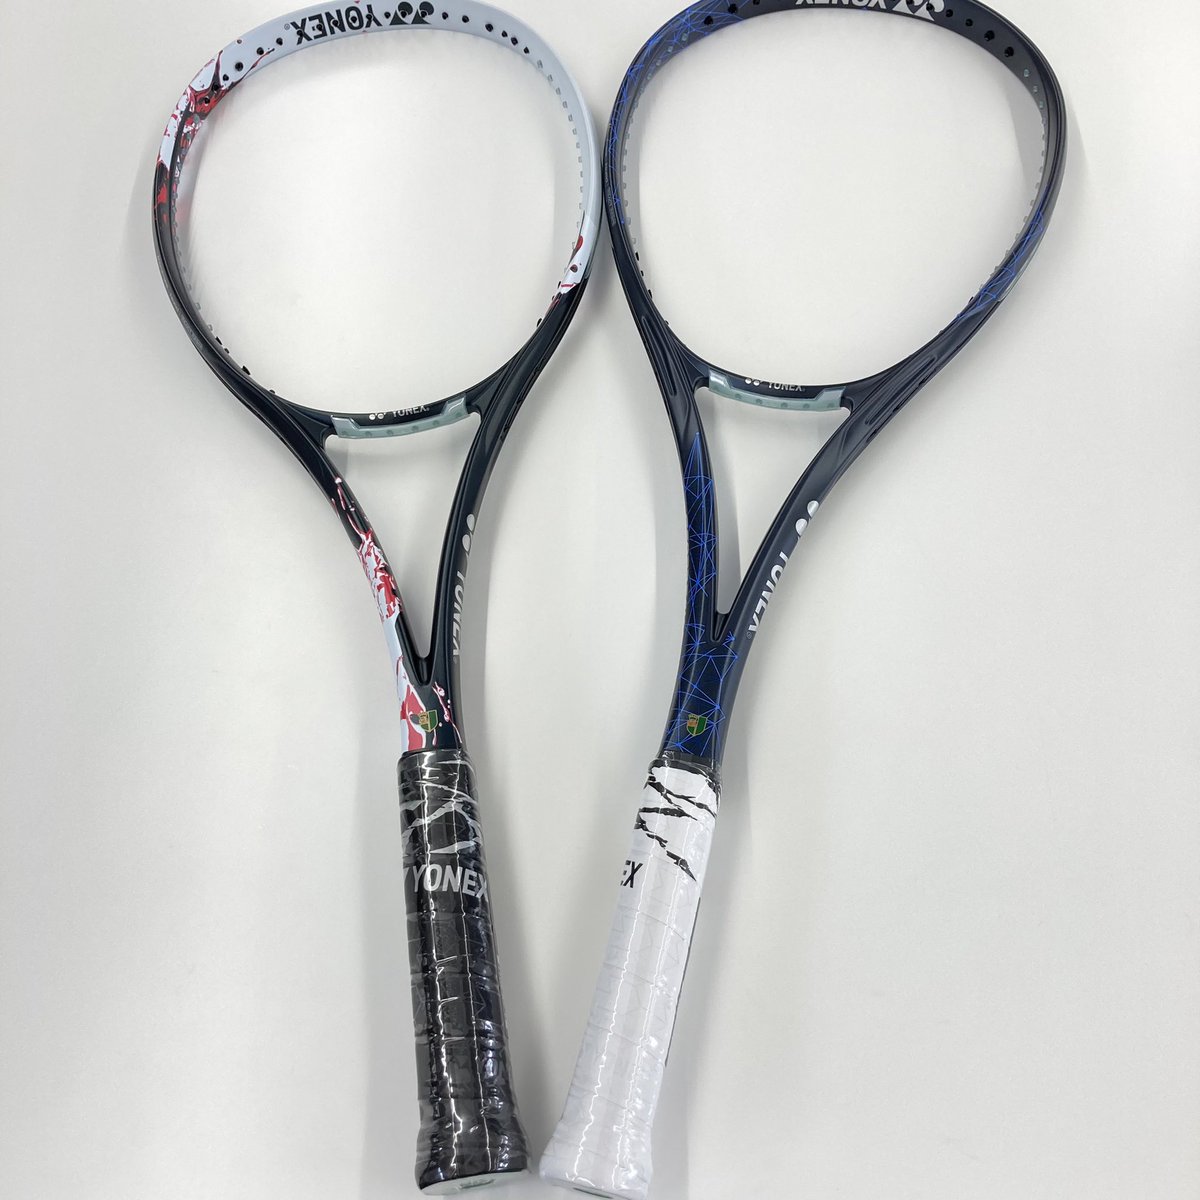 YONEX ジオブレイク80s グレイッシュブルー テニス ラケット(軟式用